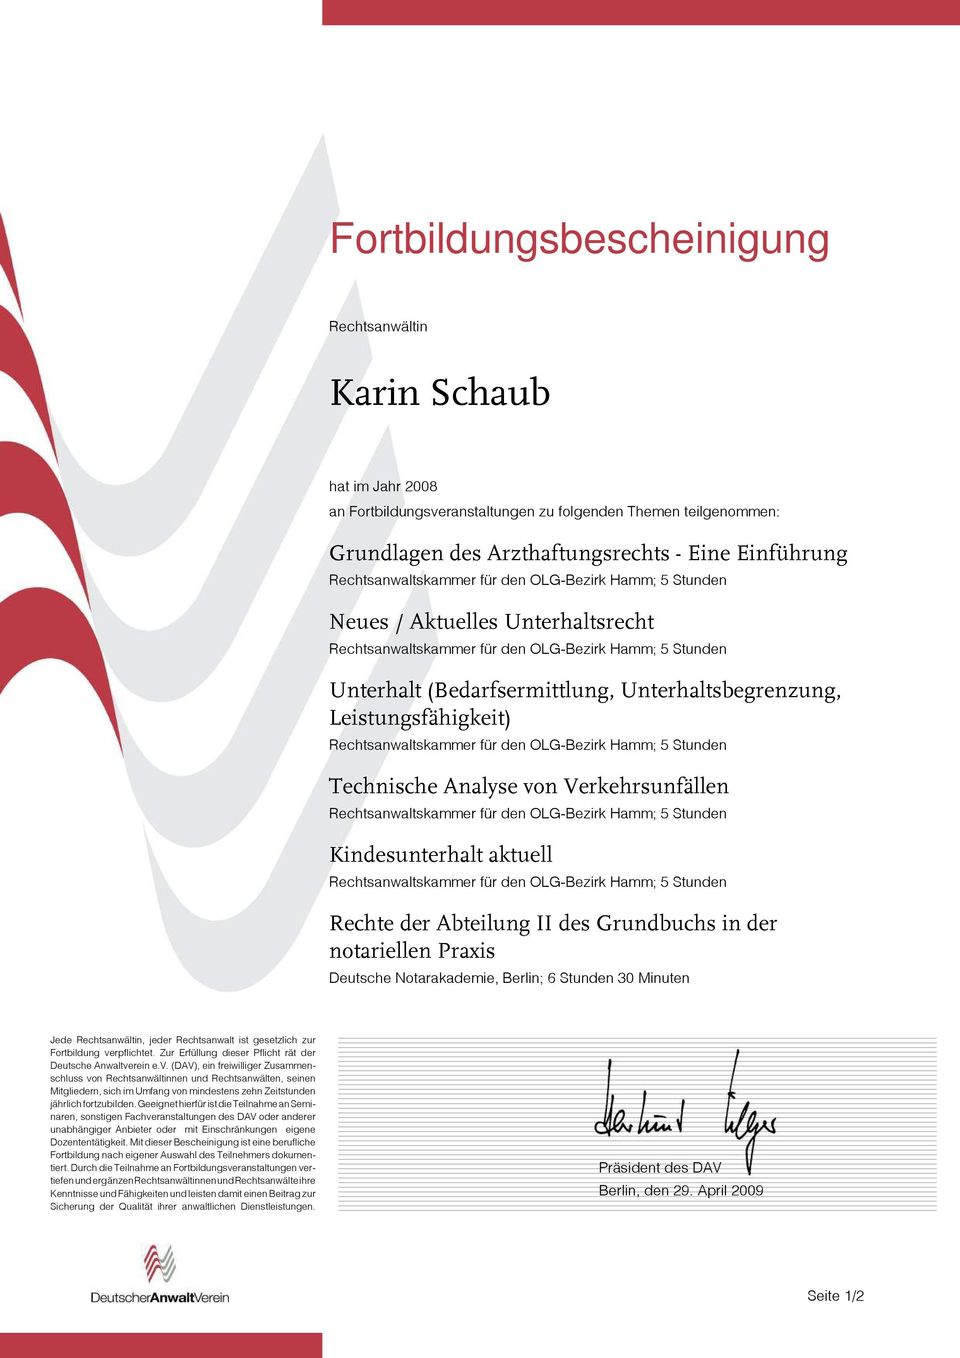 Rechte der Abteilung II des Grundbuchs in der notariellen Praxis Deutsche Notarakademie, Berlin; 6 Stunden 30 Minuten Jede,